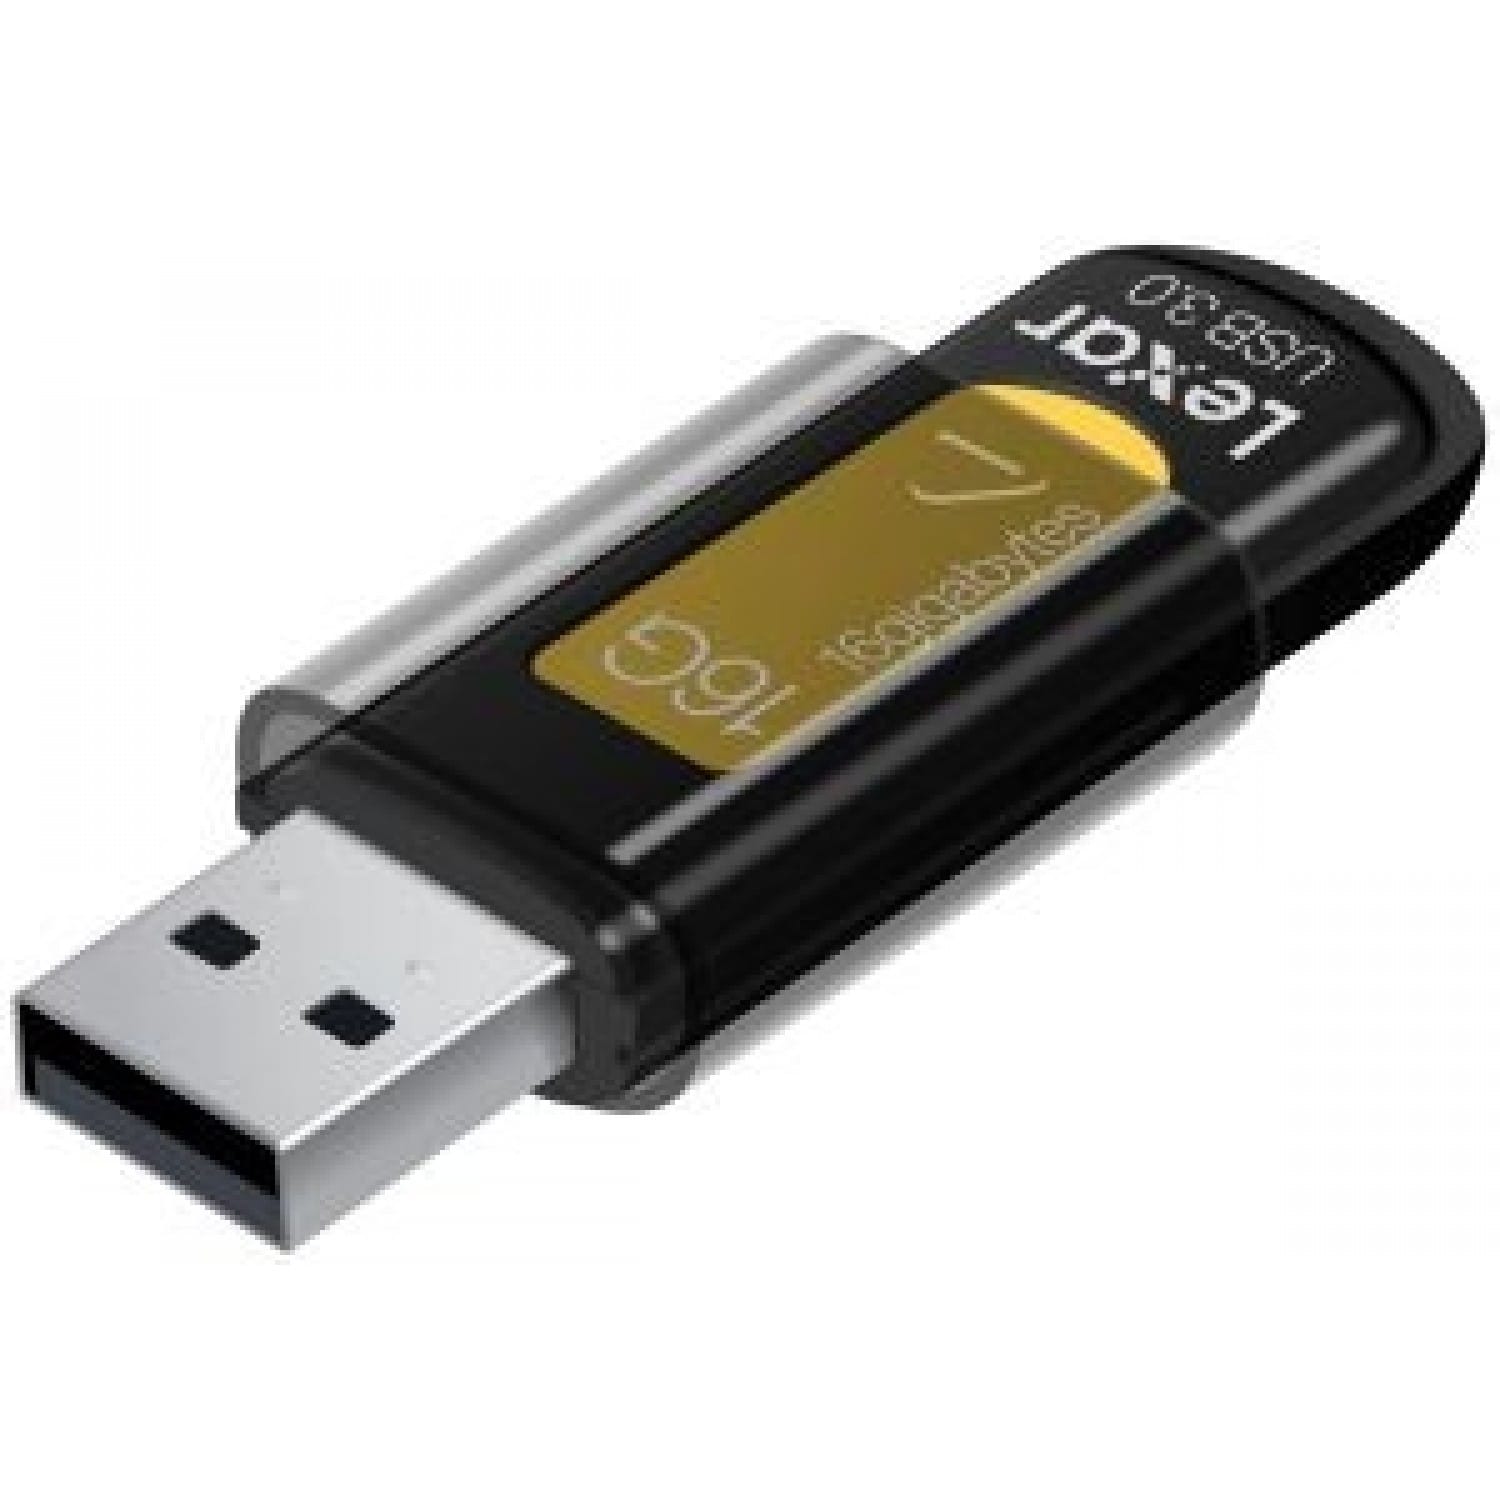 Generic Clé USB 16 Go - Transfert Rapide USB 3.0 à prix pas cher